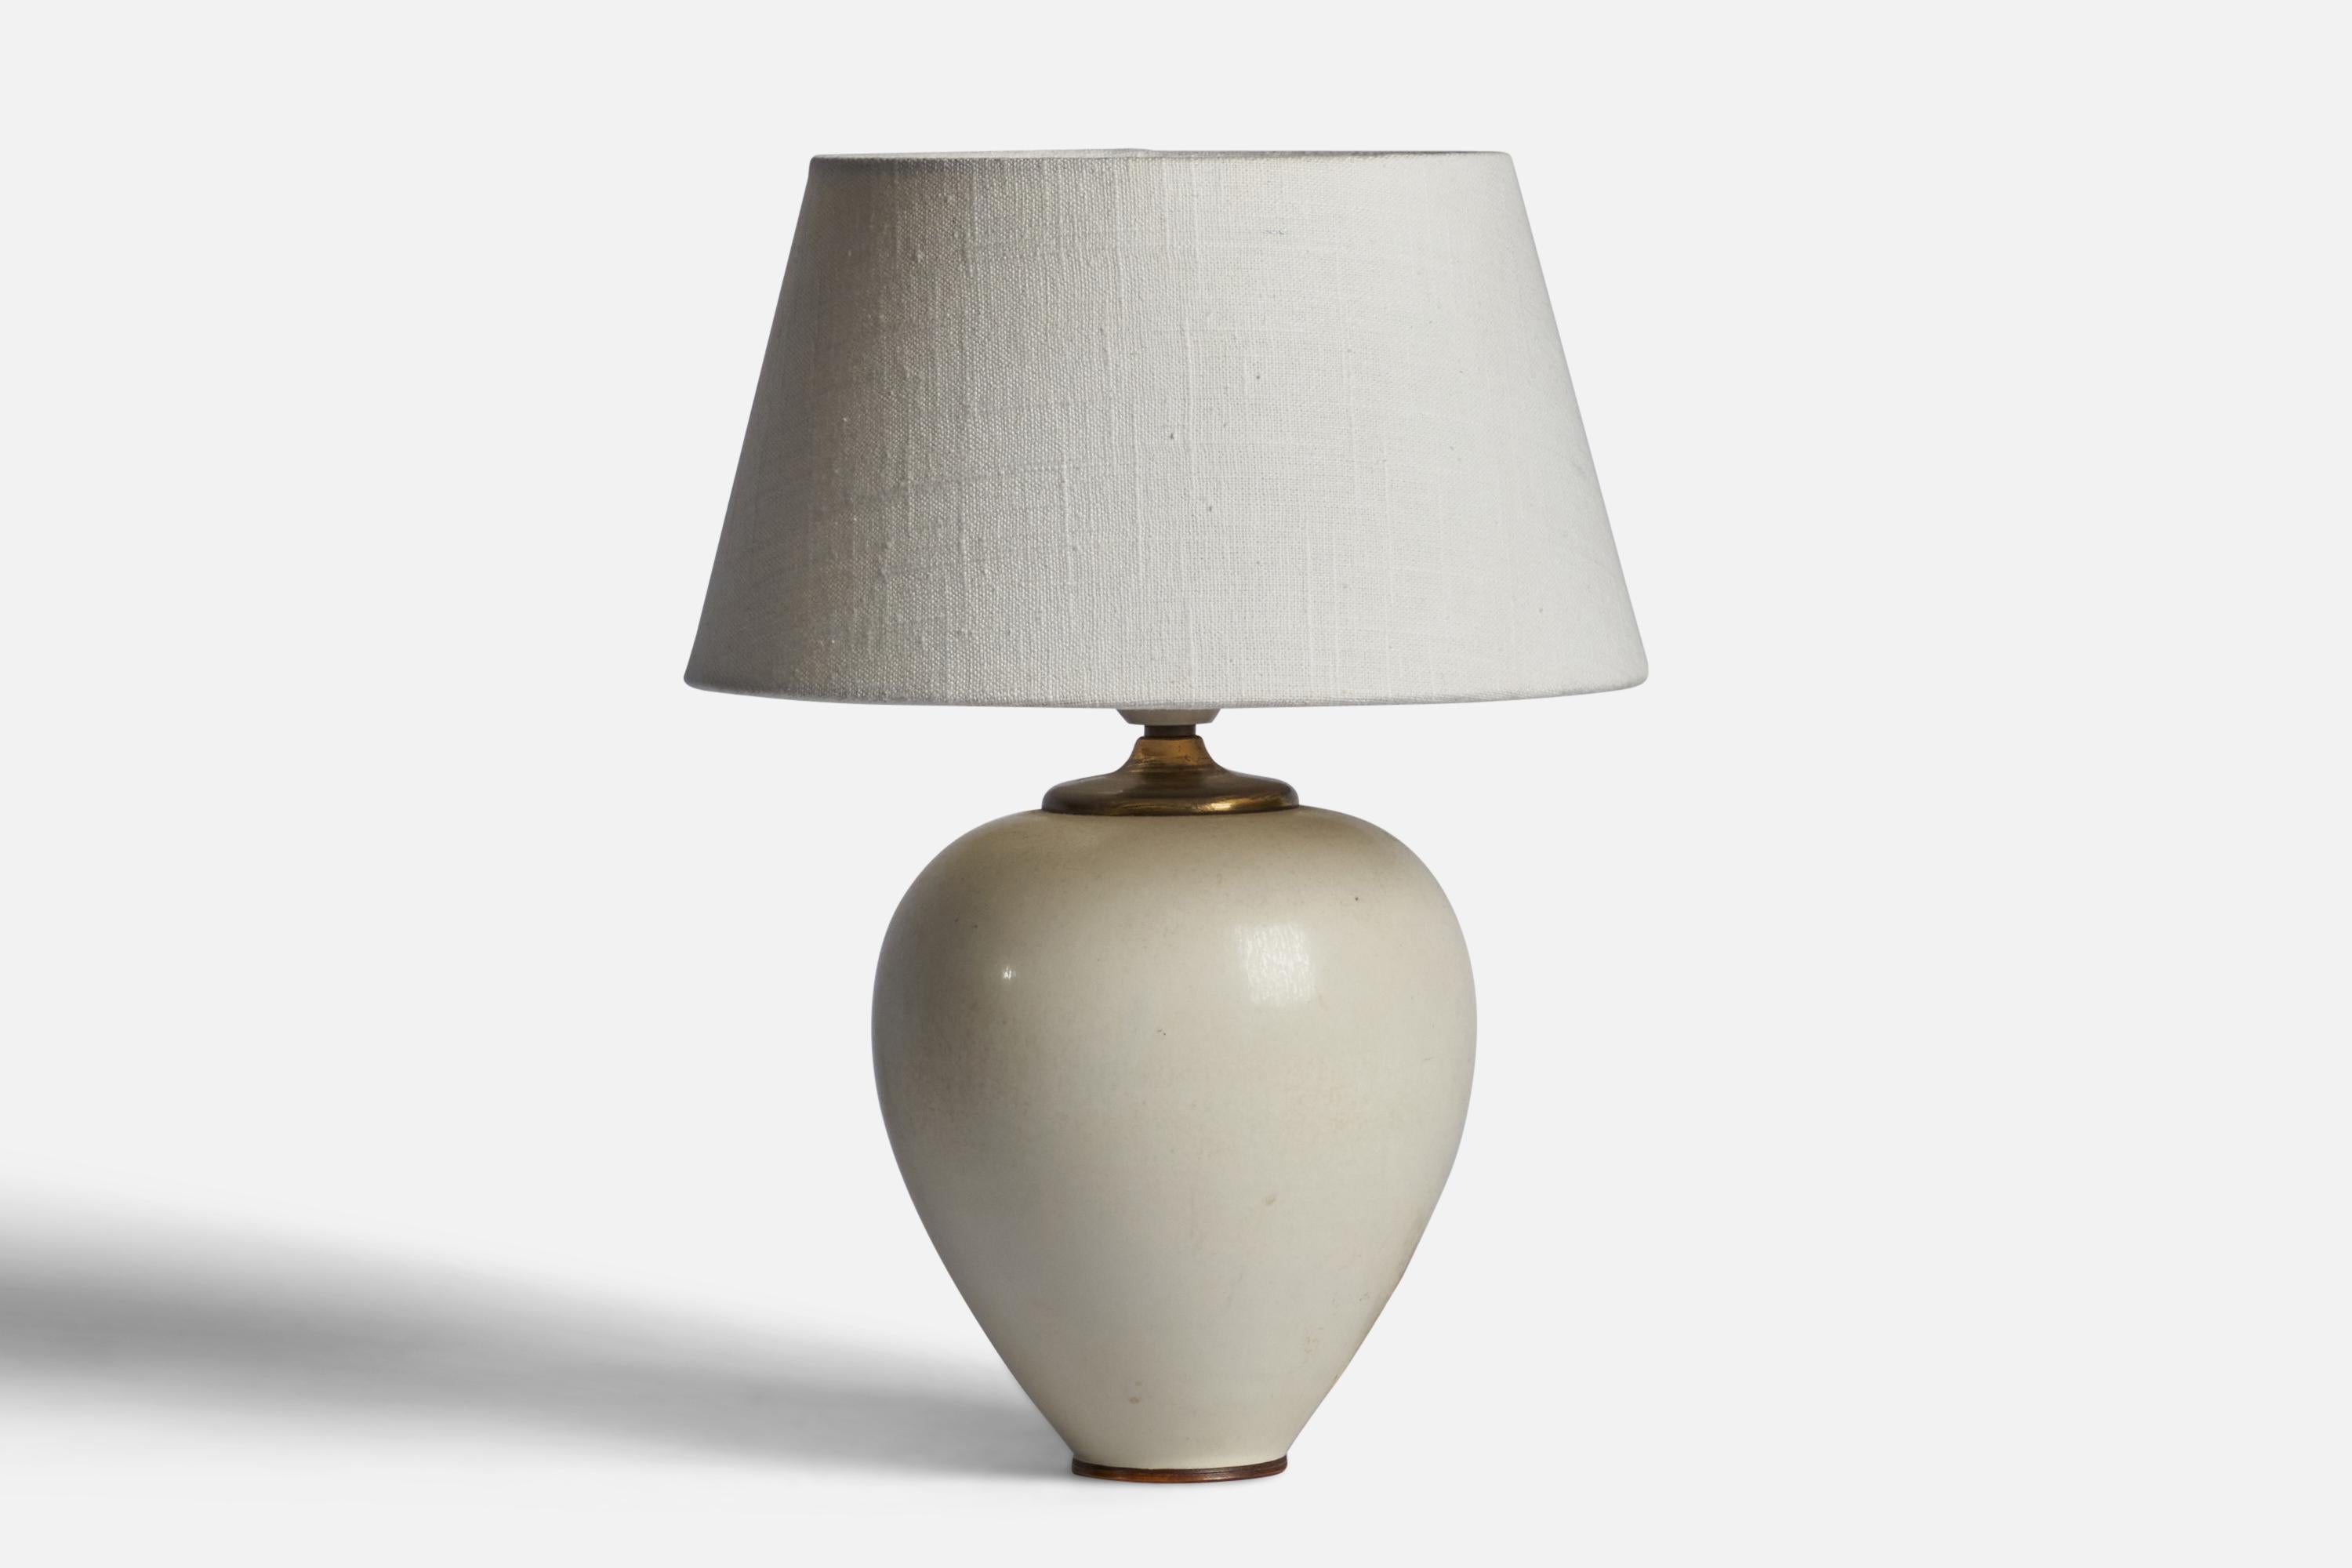 Lampe de table en grès émaillé blanc cassé et laiton, conçue par Berndt Friberg et produite par Gustavsberg, Suède, années 1950.

Dimensions de la lampe (pouces) : 10.5